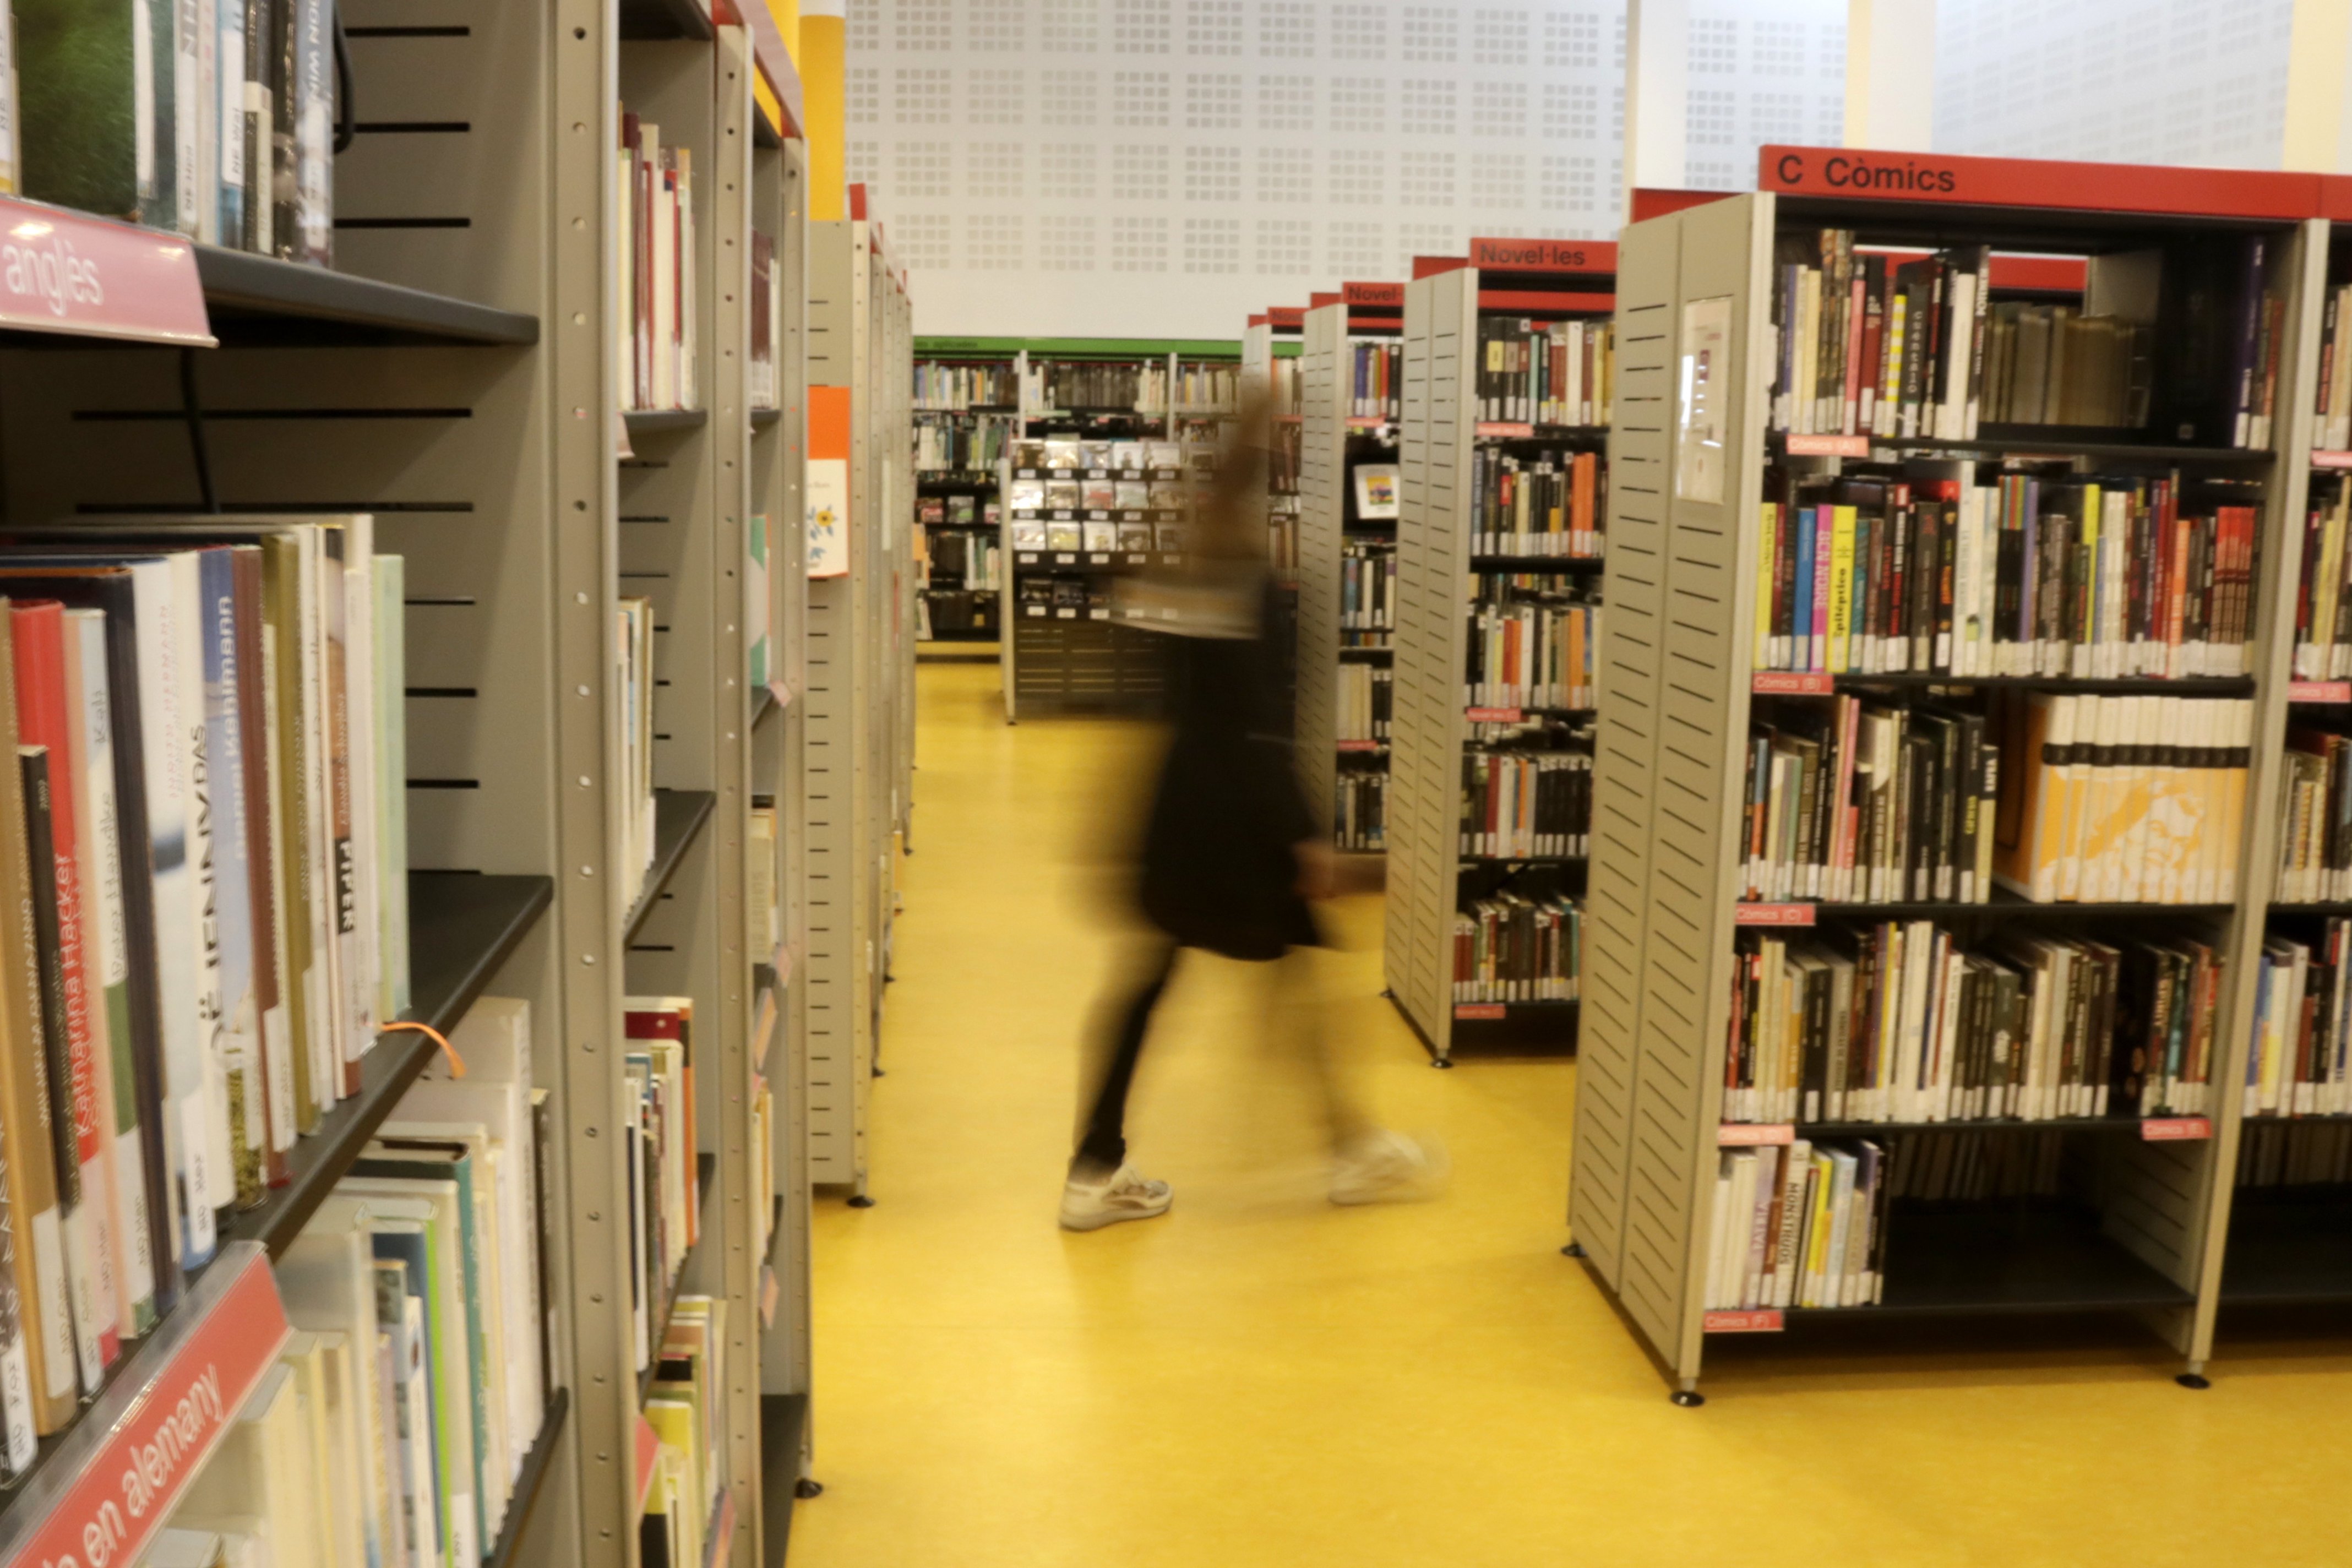 Crisi lingüística a les biblioteques: només 1 de cada 4 llibres està en català